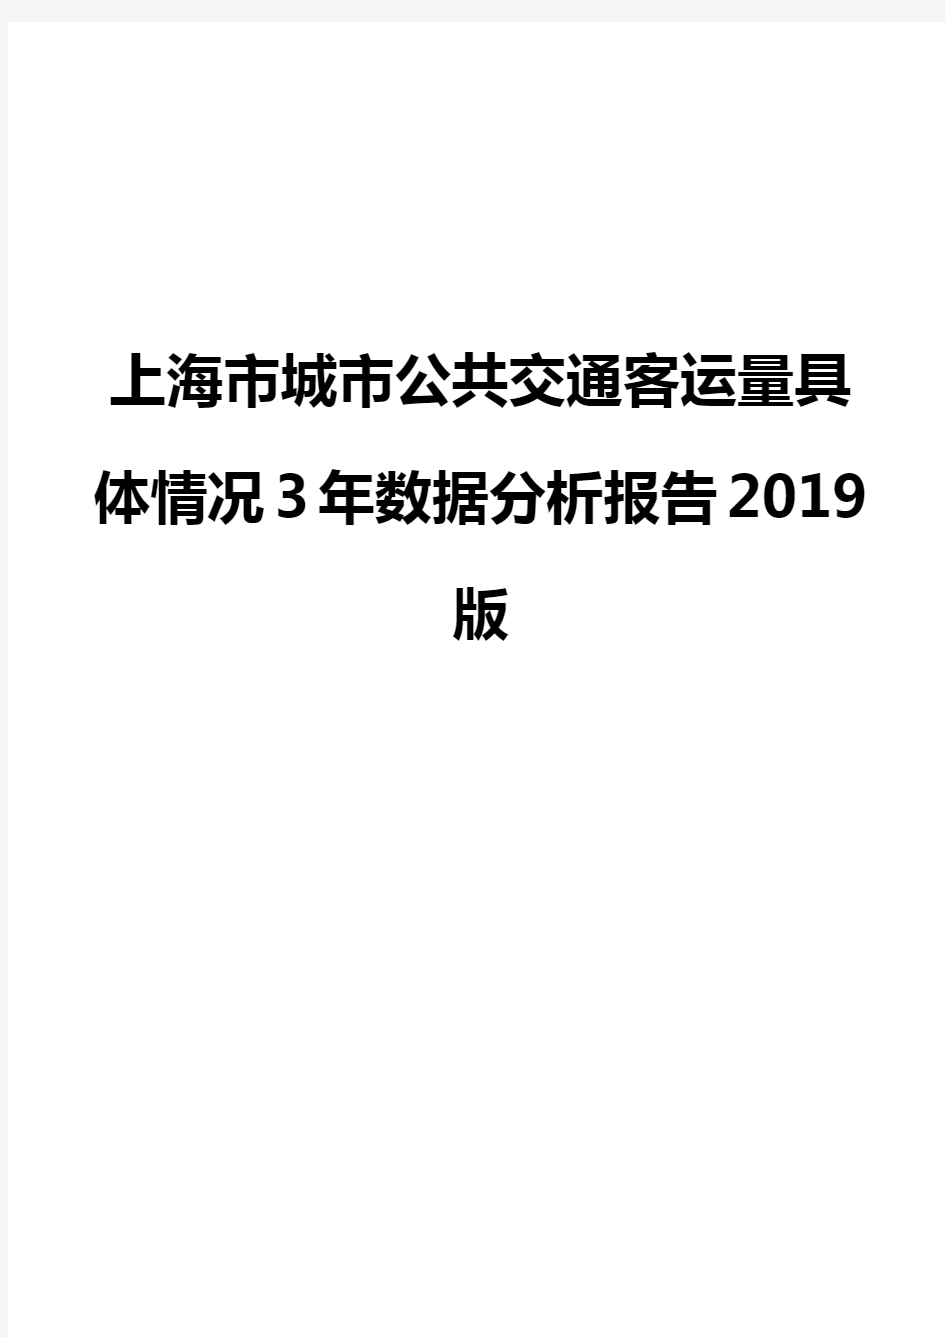 上海市城市公共交通客运量具体情况3年数据分析报告2019版